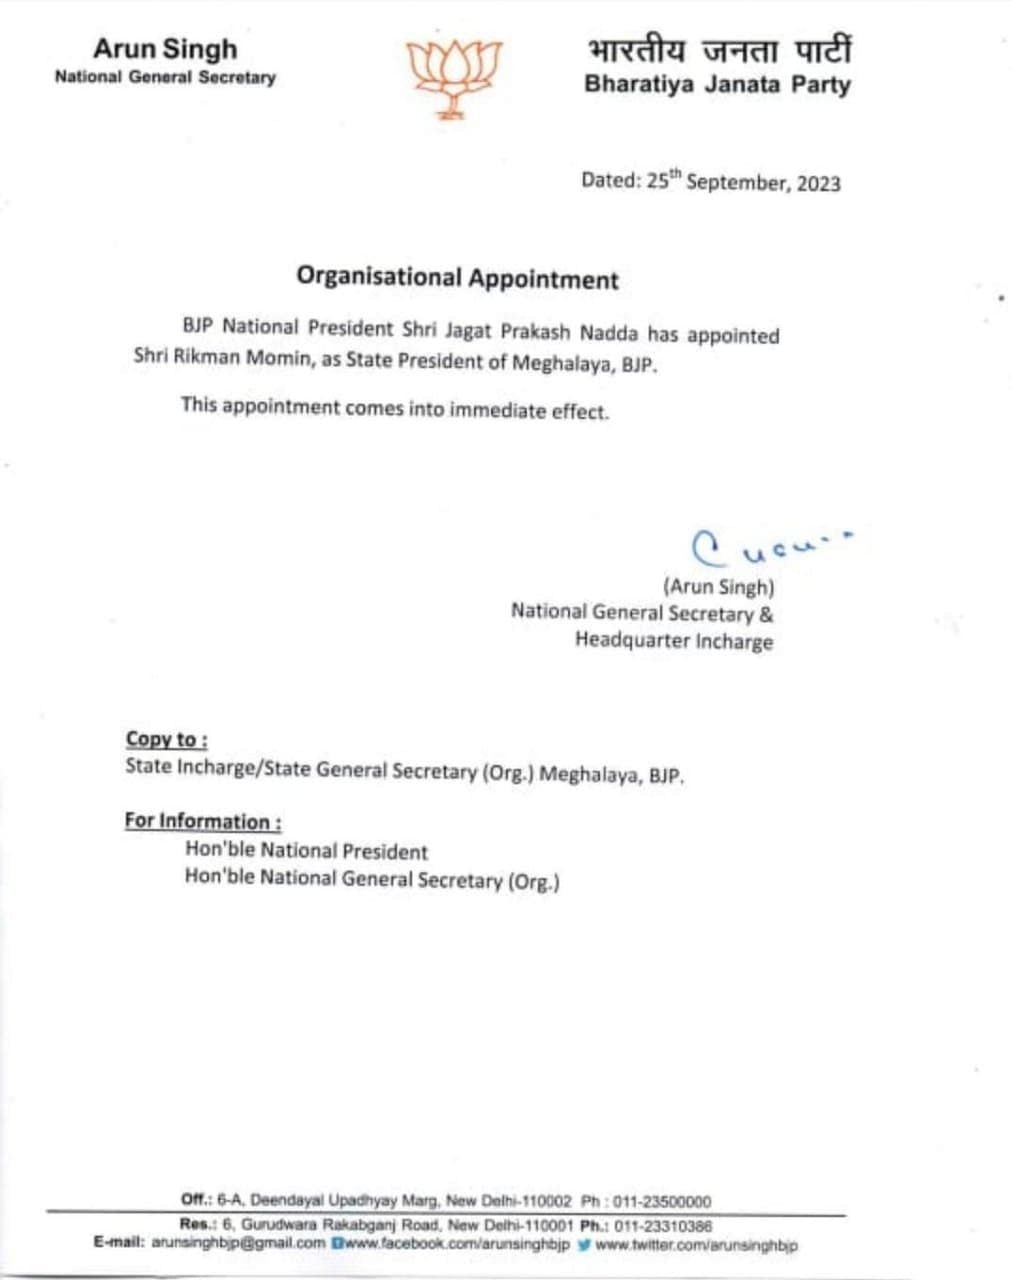 BJP ने बेंजामिन येपथोमी को नागालैंड, रिकमैन मोमिन को मेघालय और एस. सेल्वगनबथी को पुड्डुचेरी का नया प्रदेश अध्यक्ष नियुक्त किया है.